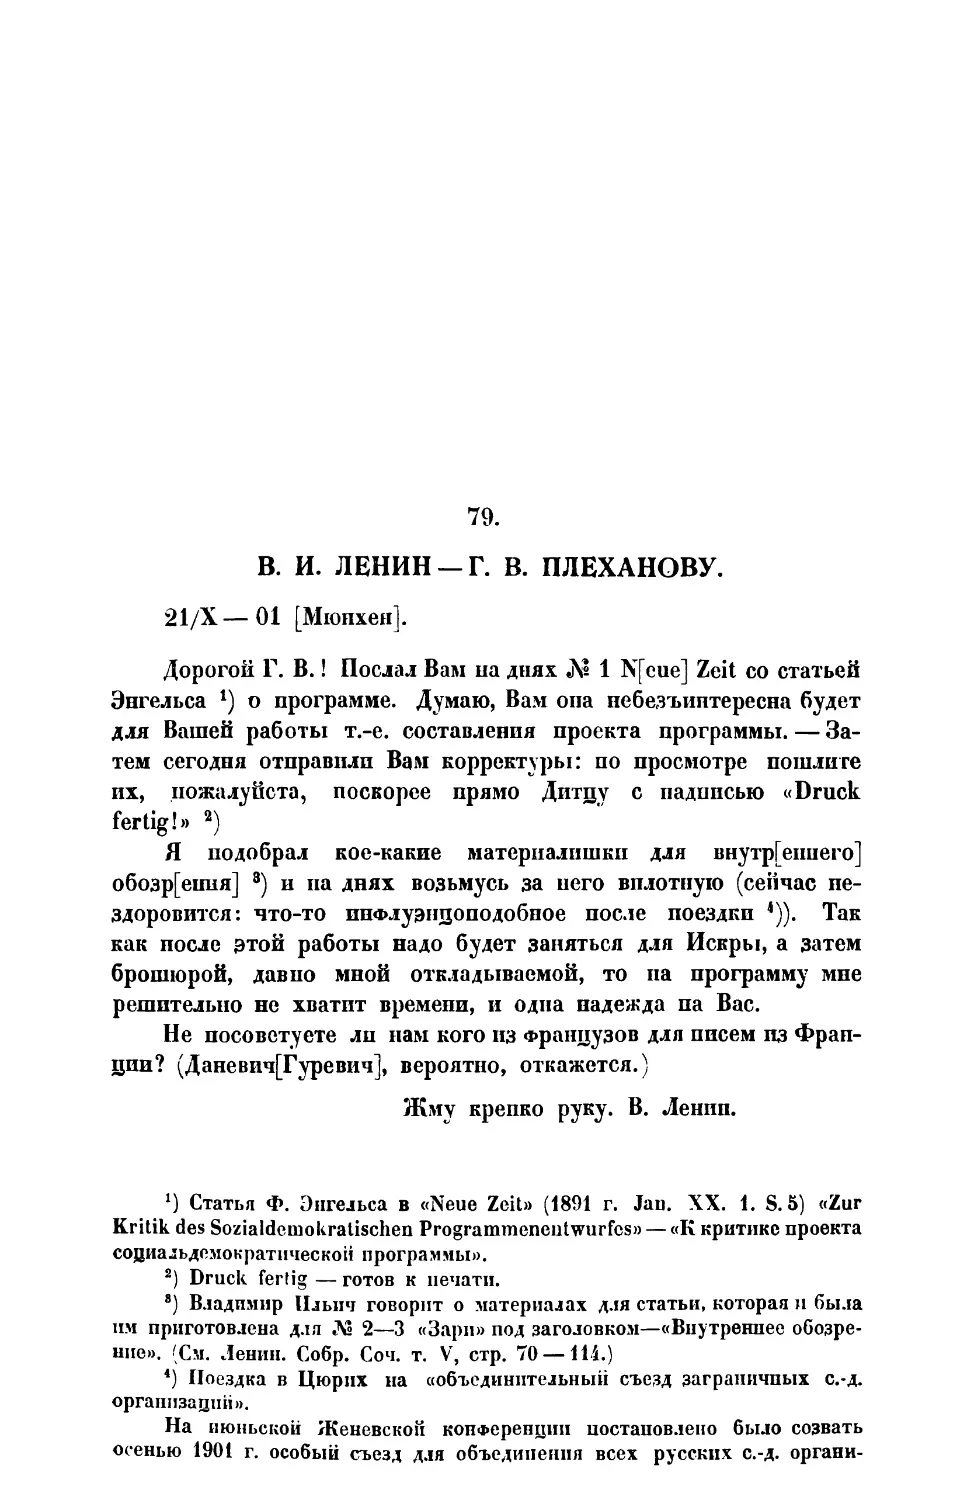 79. В. И. Ленин. — Письмо Г. В. Плеханову от 21 X 1901 г.